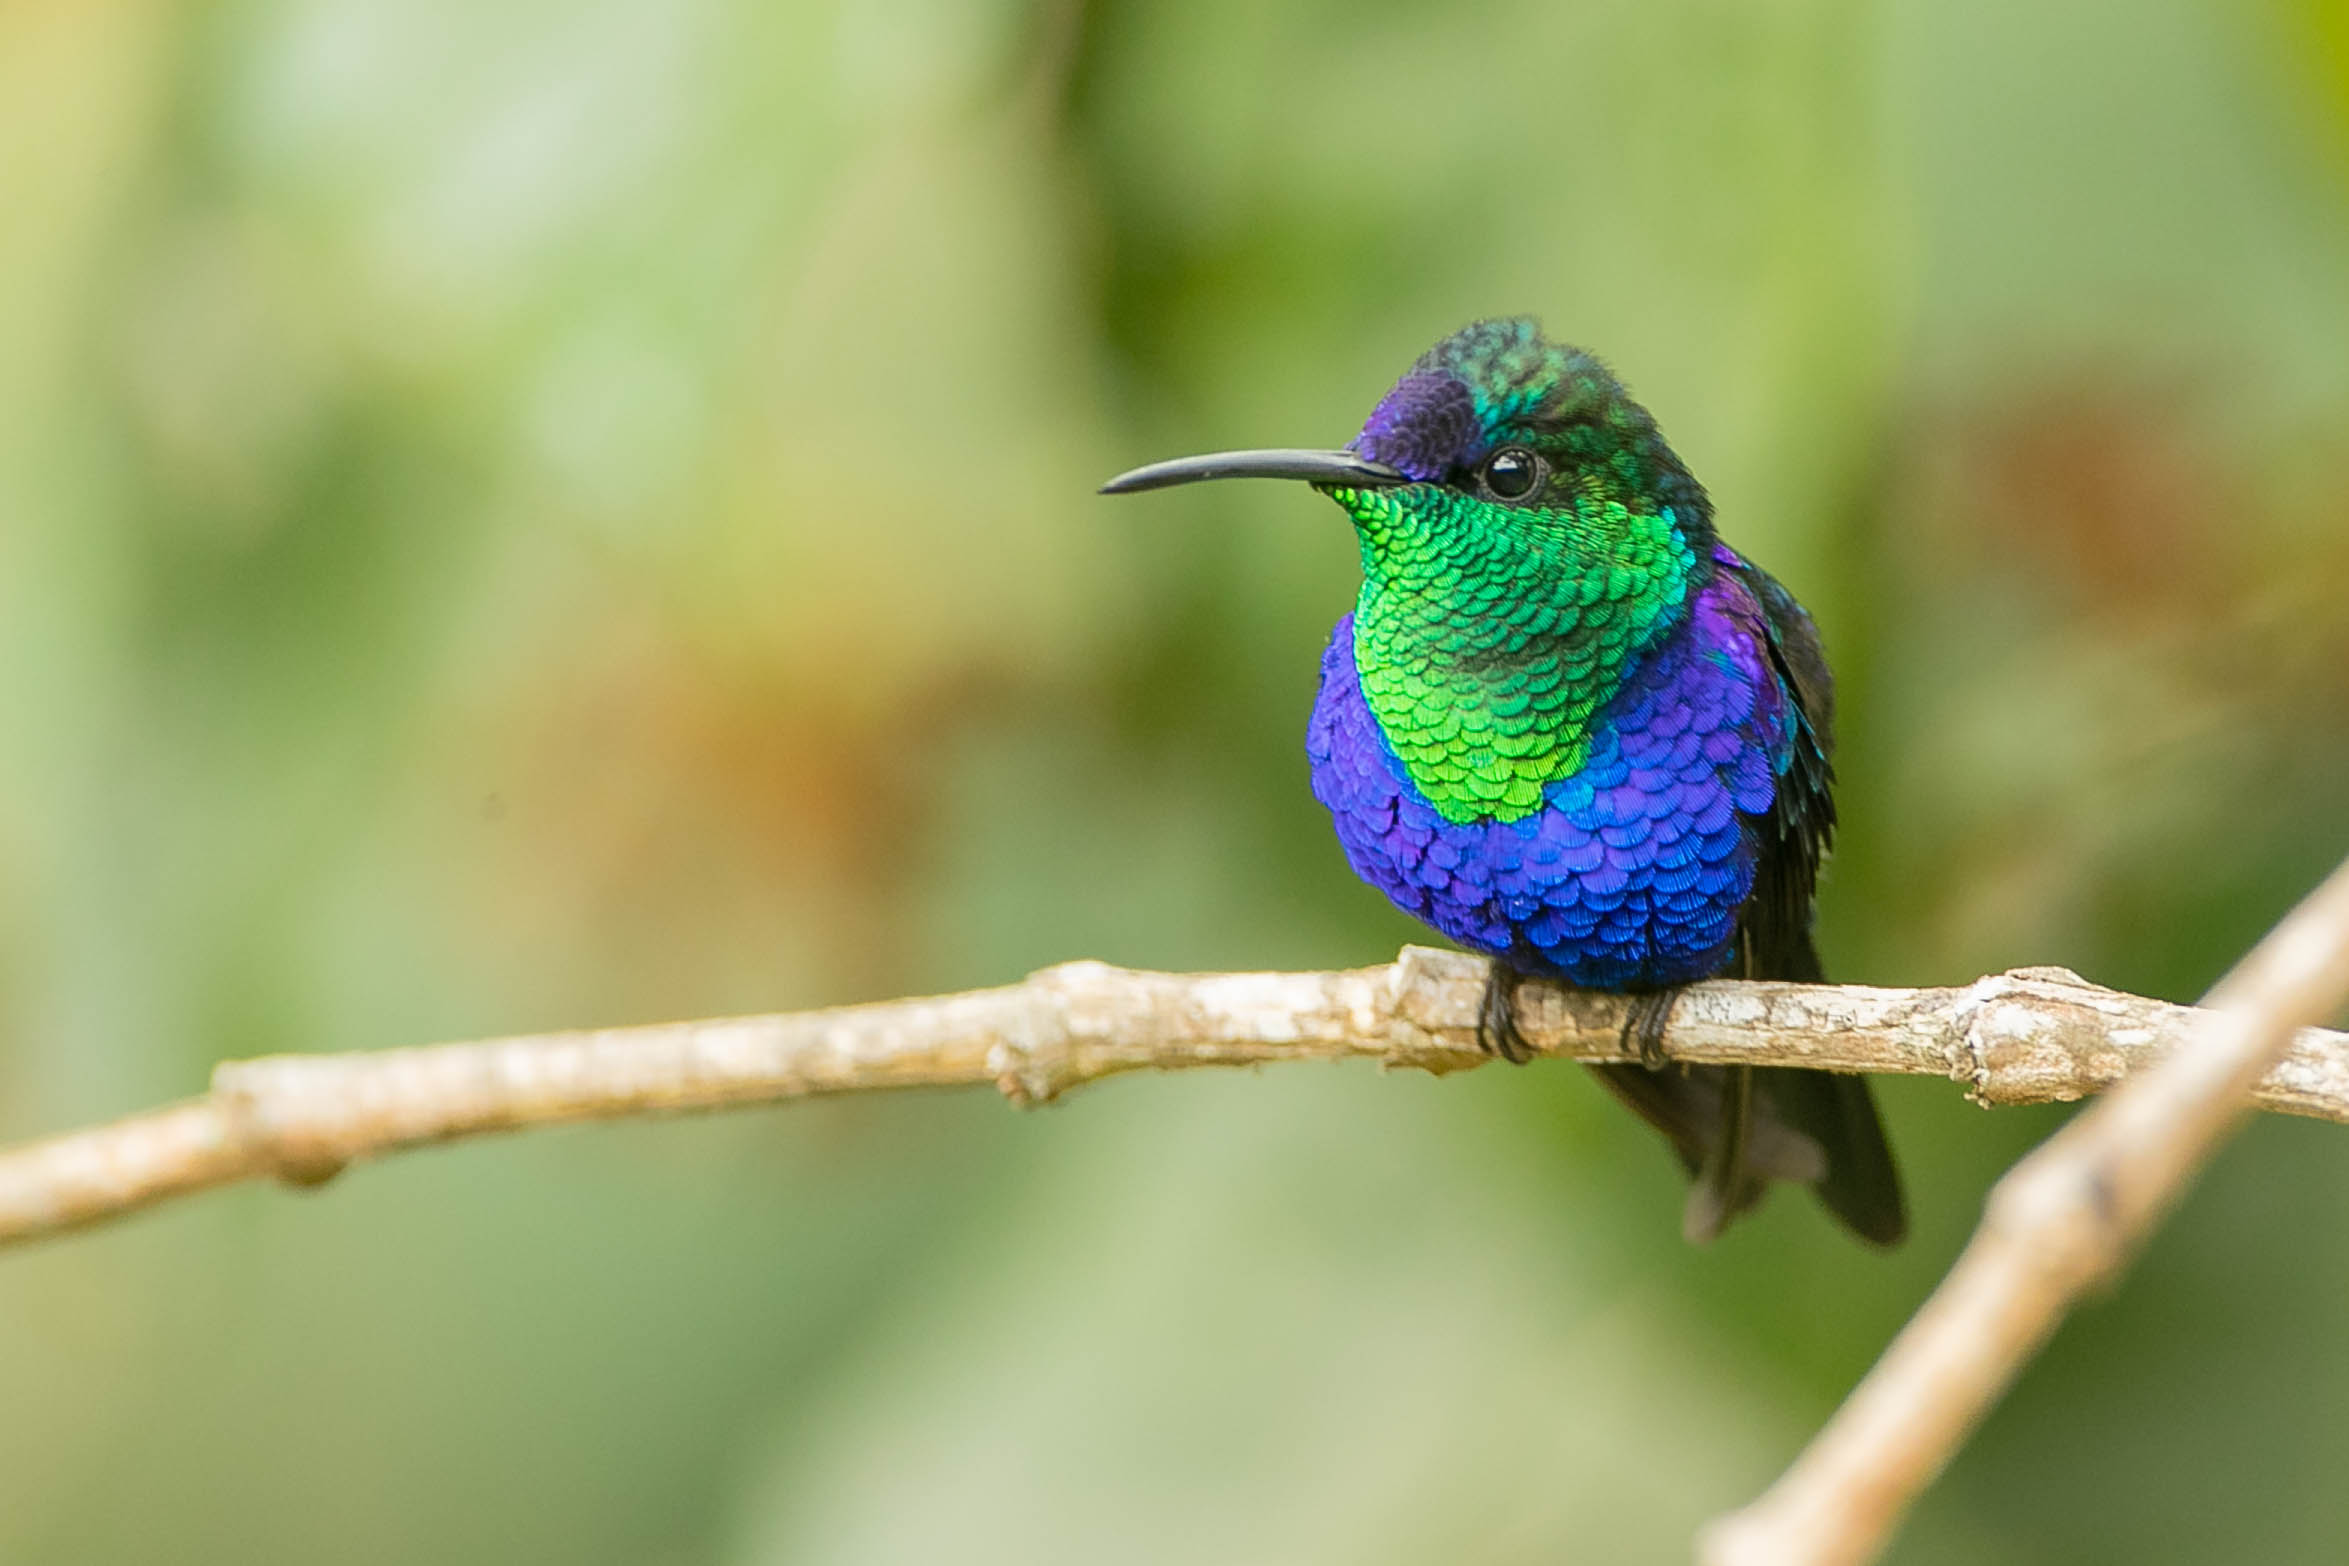 Un colibri que l'on croyait disparu a été redécouvert en Colombie